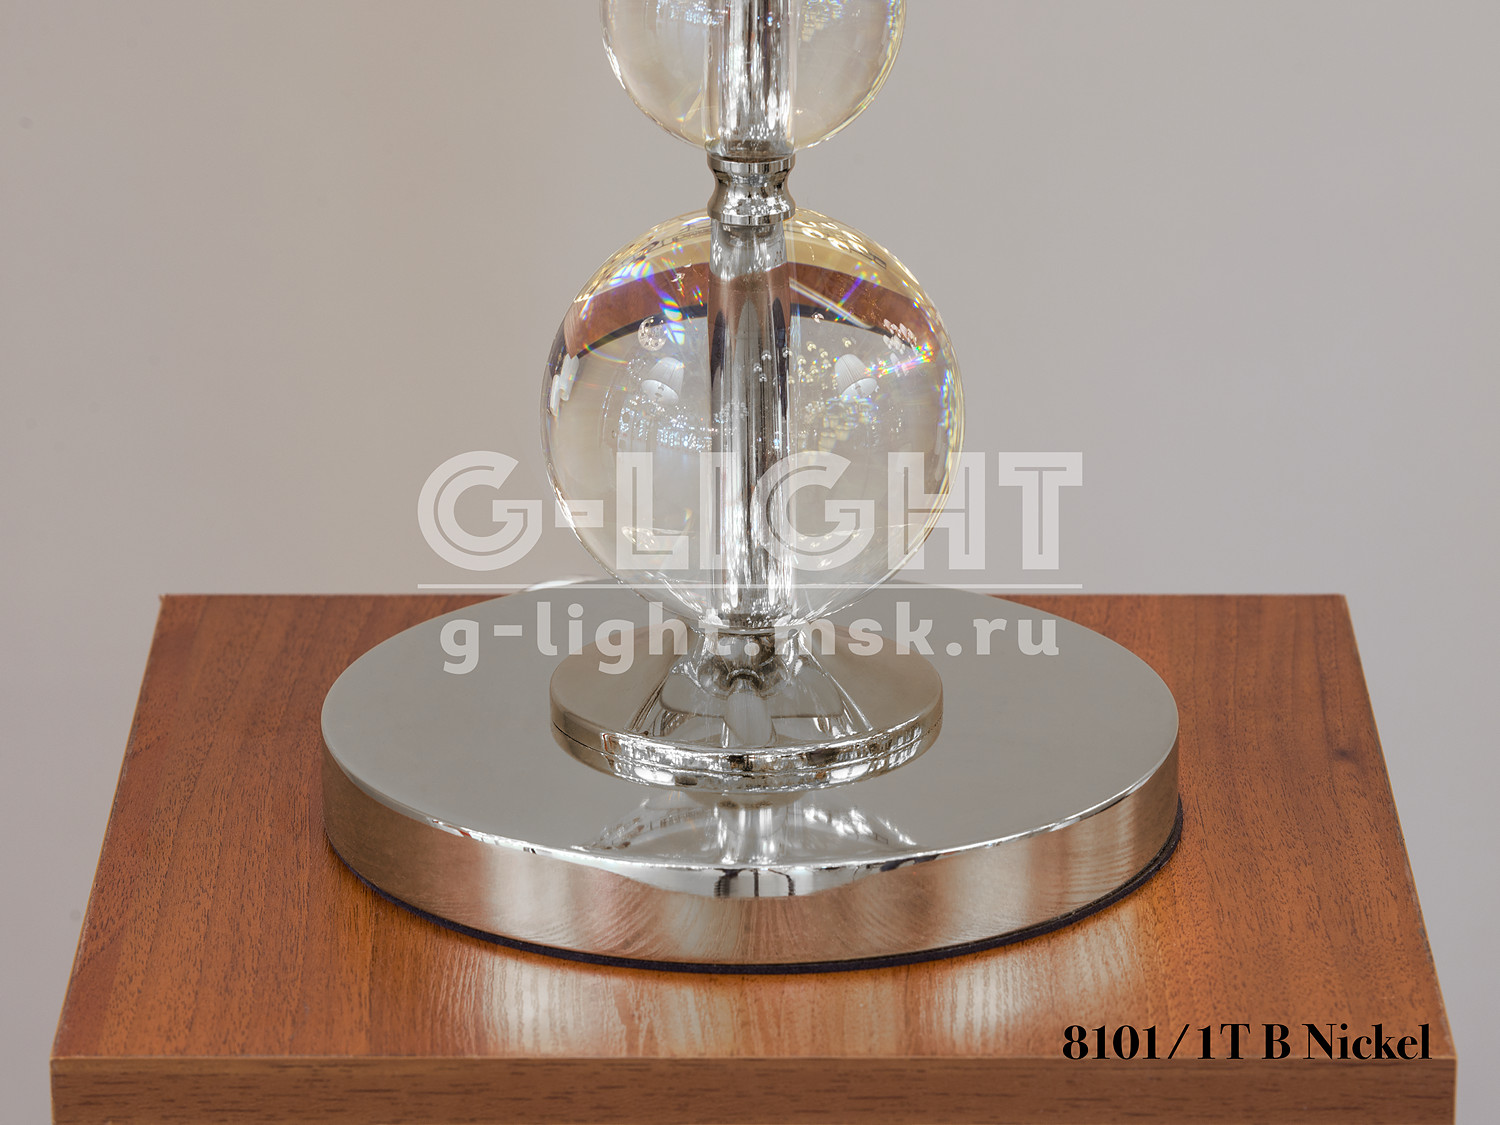 Настольная лампа 8101/1T B Nickel - изображение 4